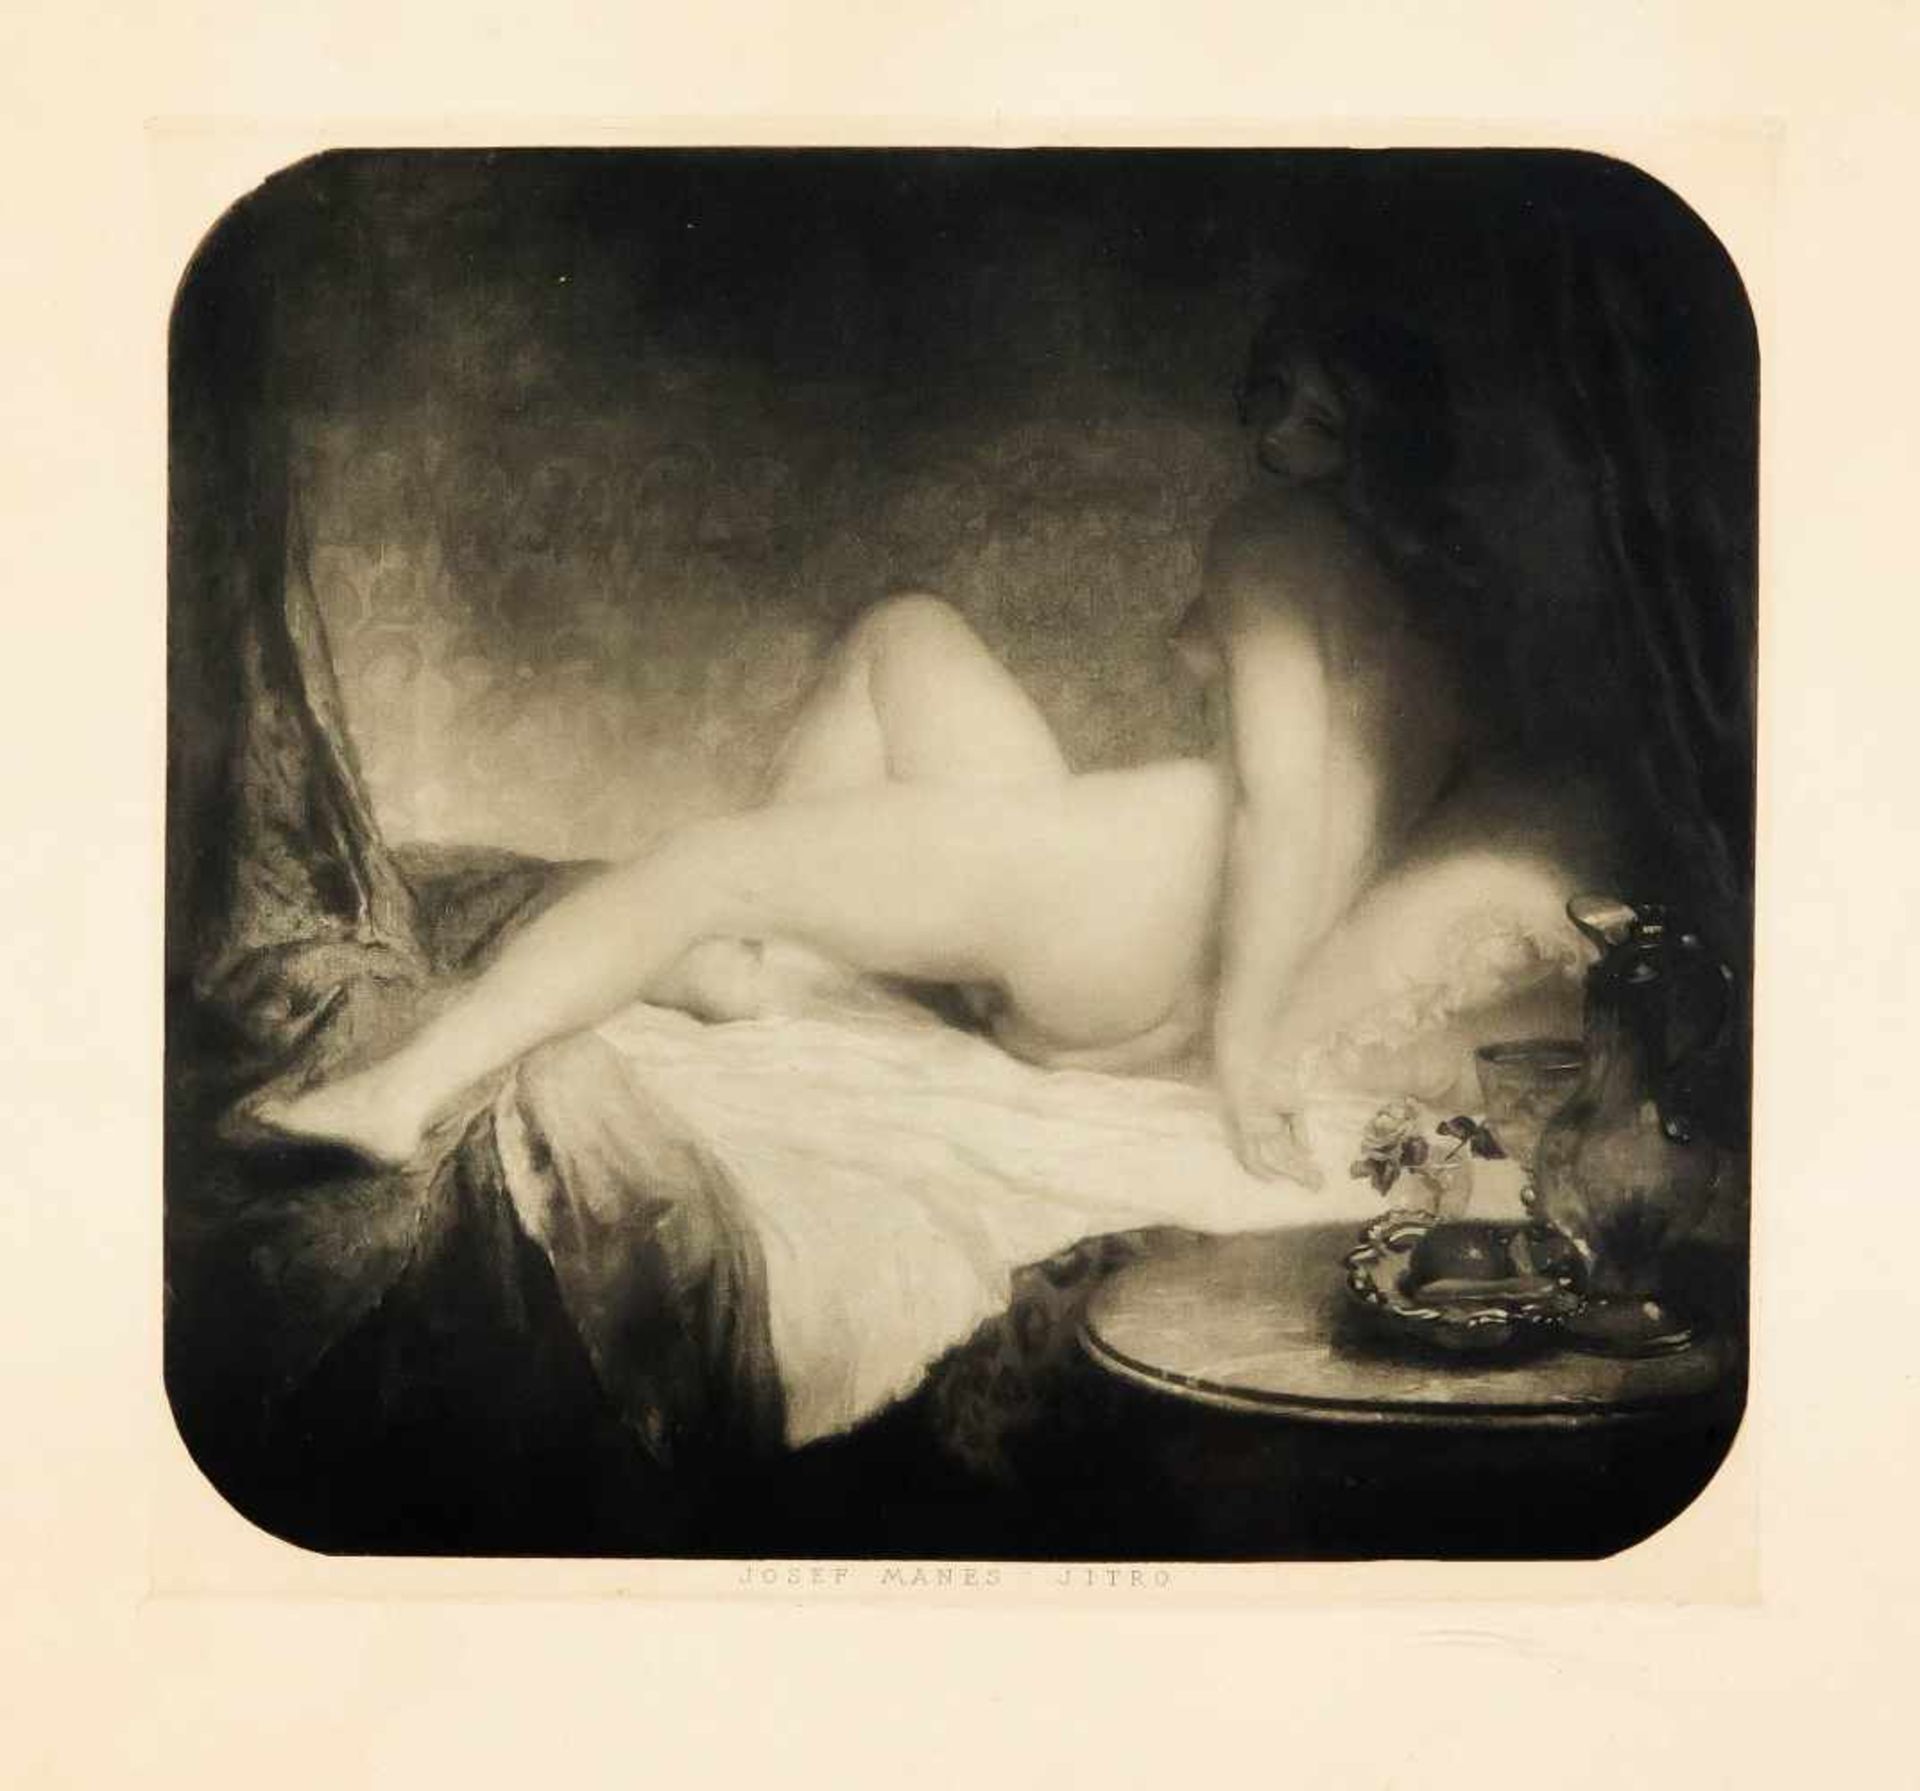 Josef Mánes (1820-1871), bedeutender tschechischer Maler des 19. Jh., zwei erotische